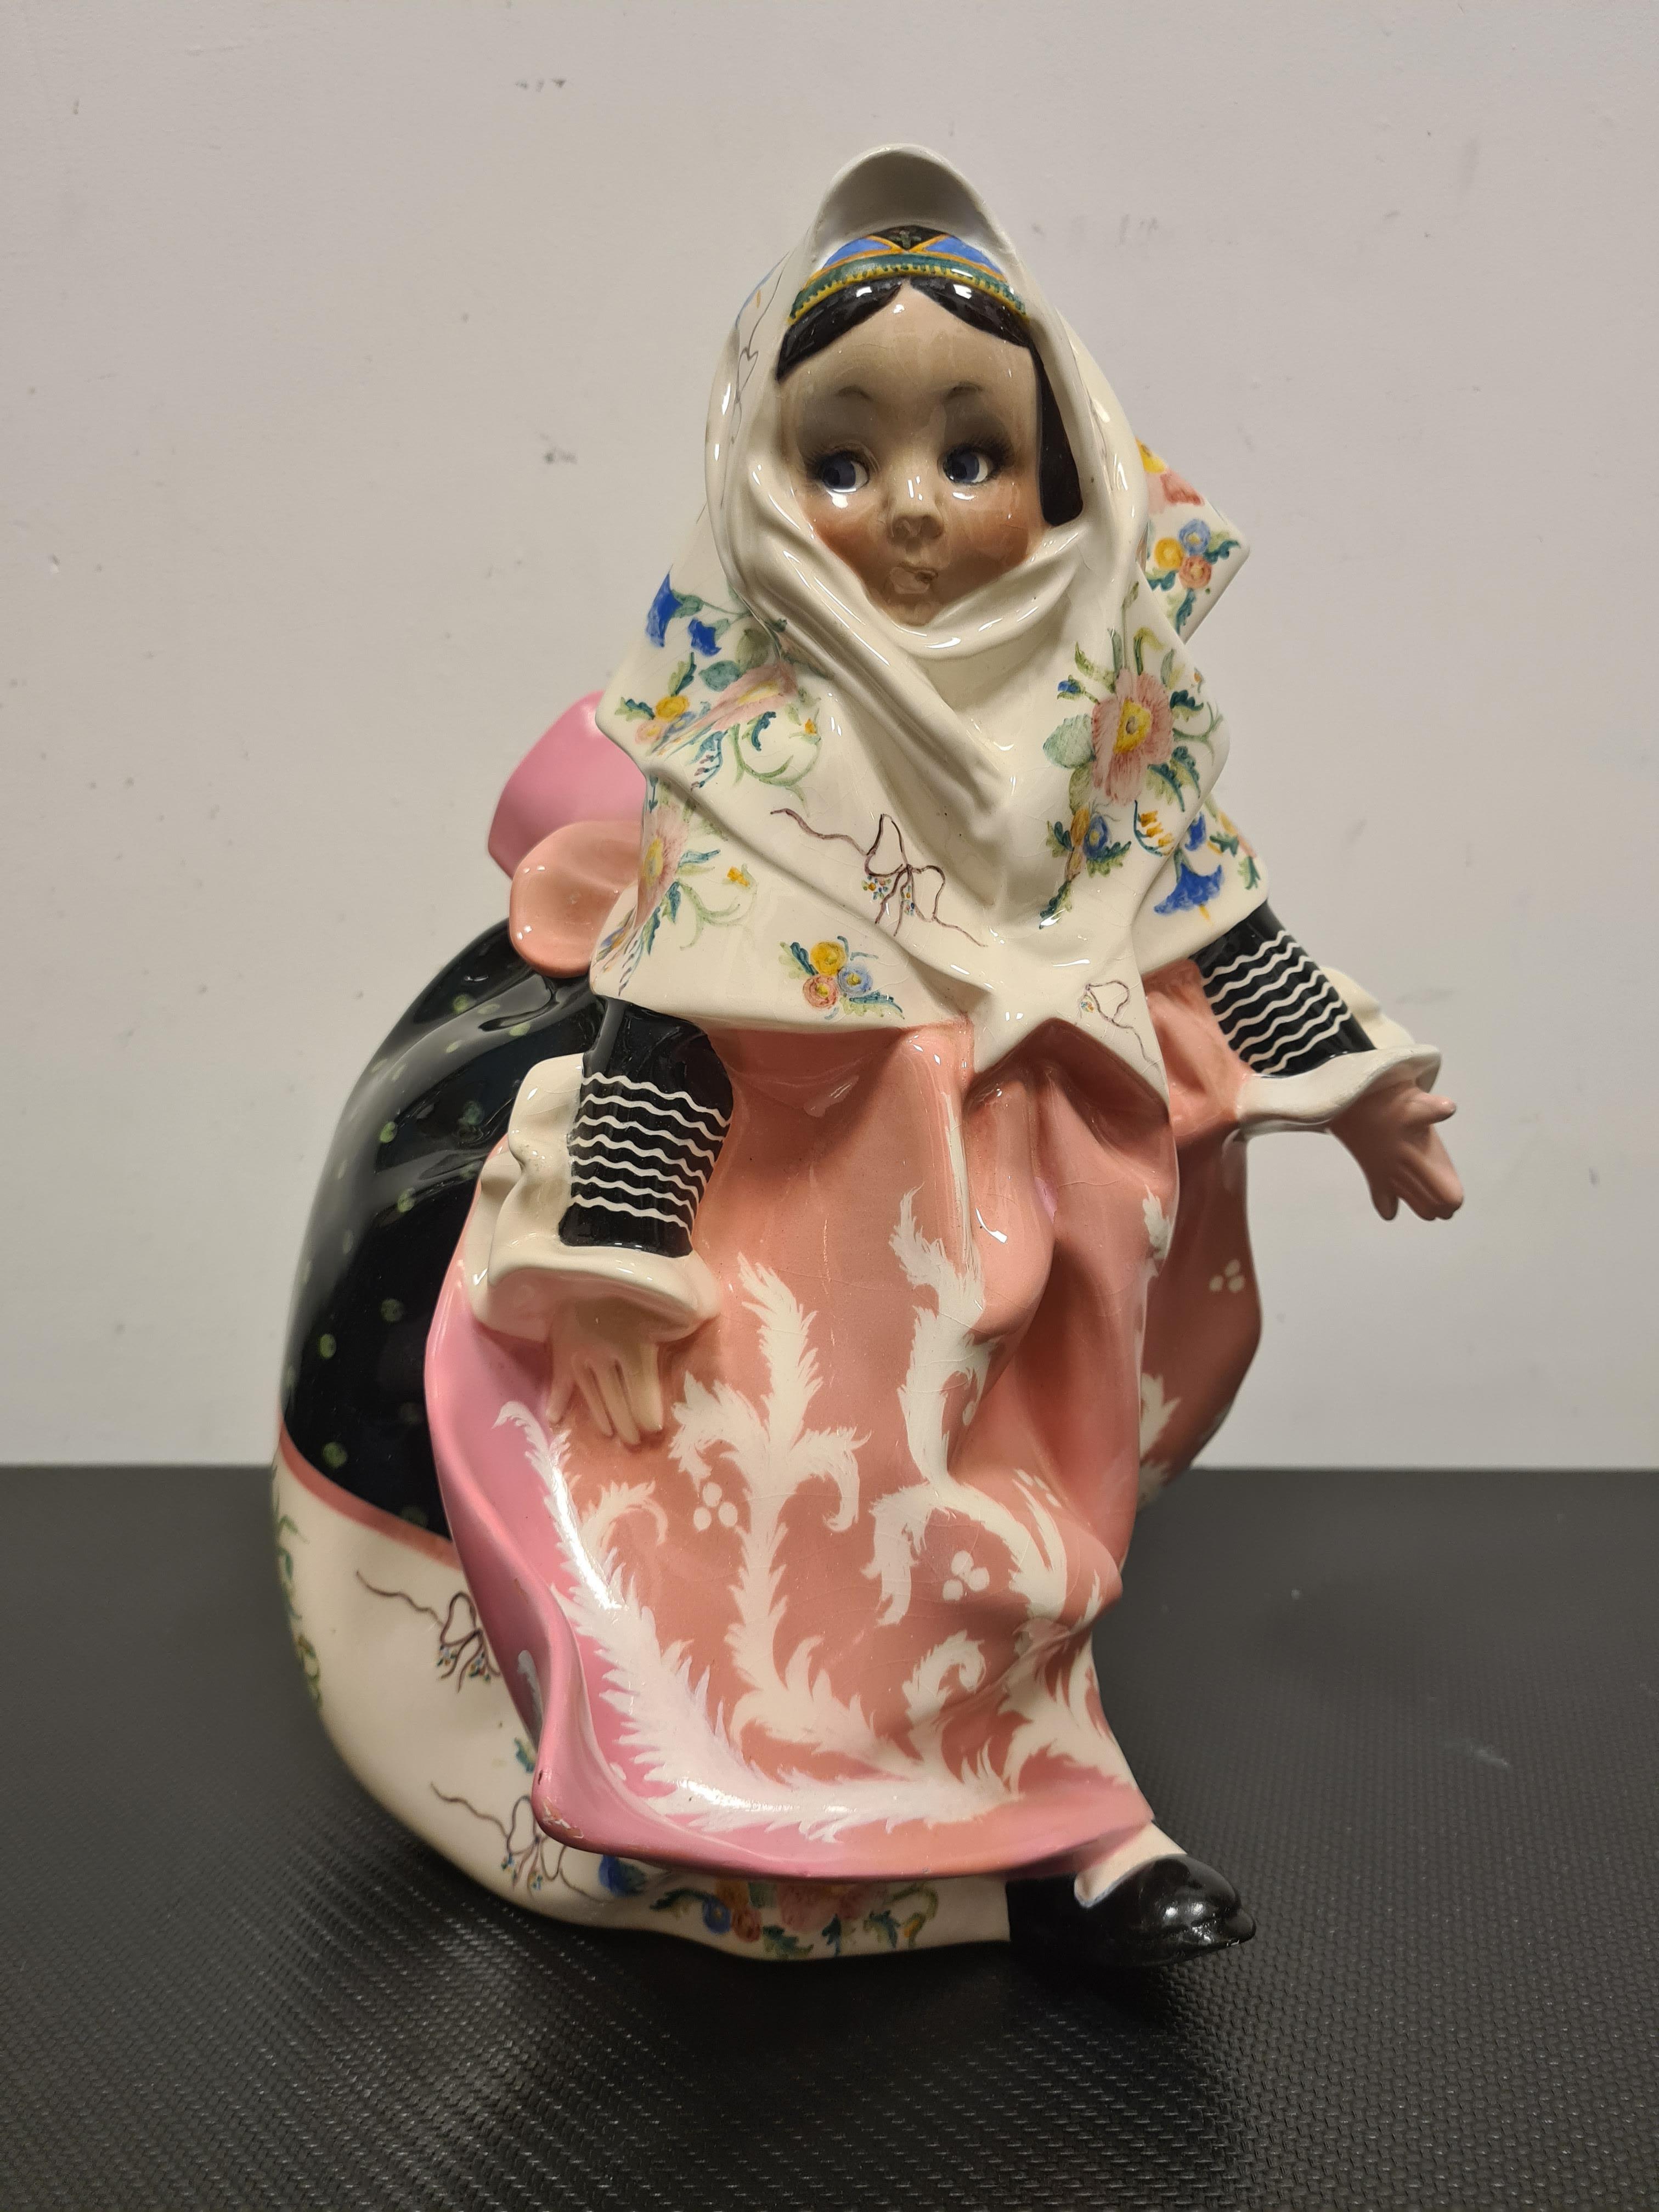 Keramik mit der Darstellung eines sardischen Mädchens, entworfen von Sandro Vacchetti.

Hübsche Keramikstatue, die ein süßes kleines Mädchen in einem traditionellen sardischen Kleid darstellt.

Das Werk ist das Modell Nr. 254 und wurde von Sandro